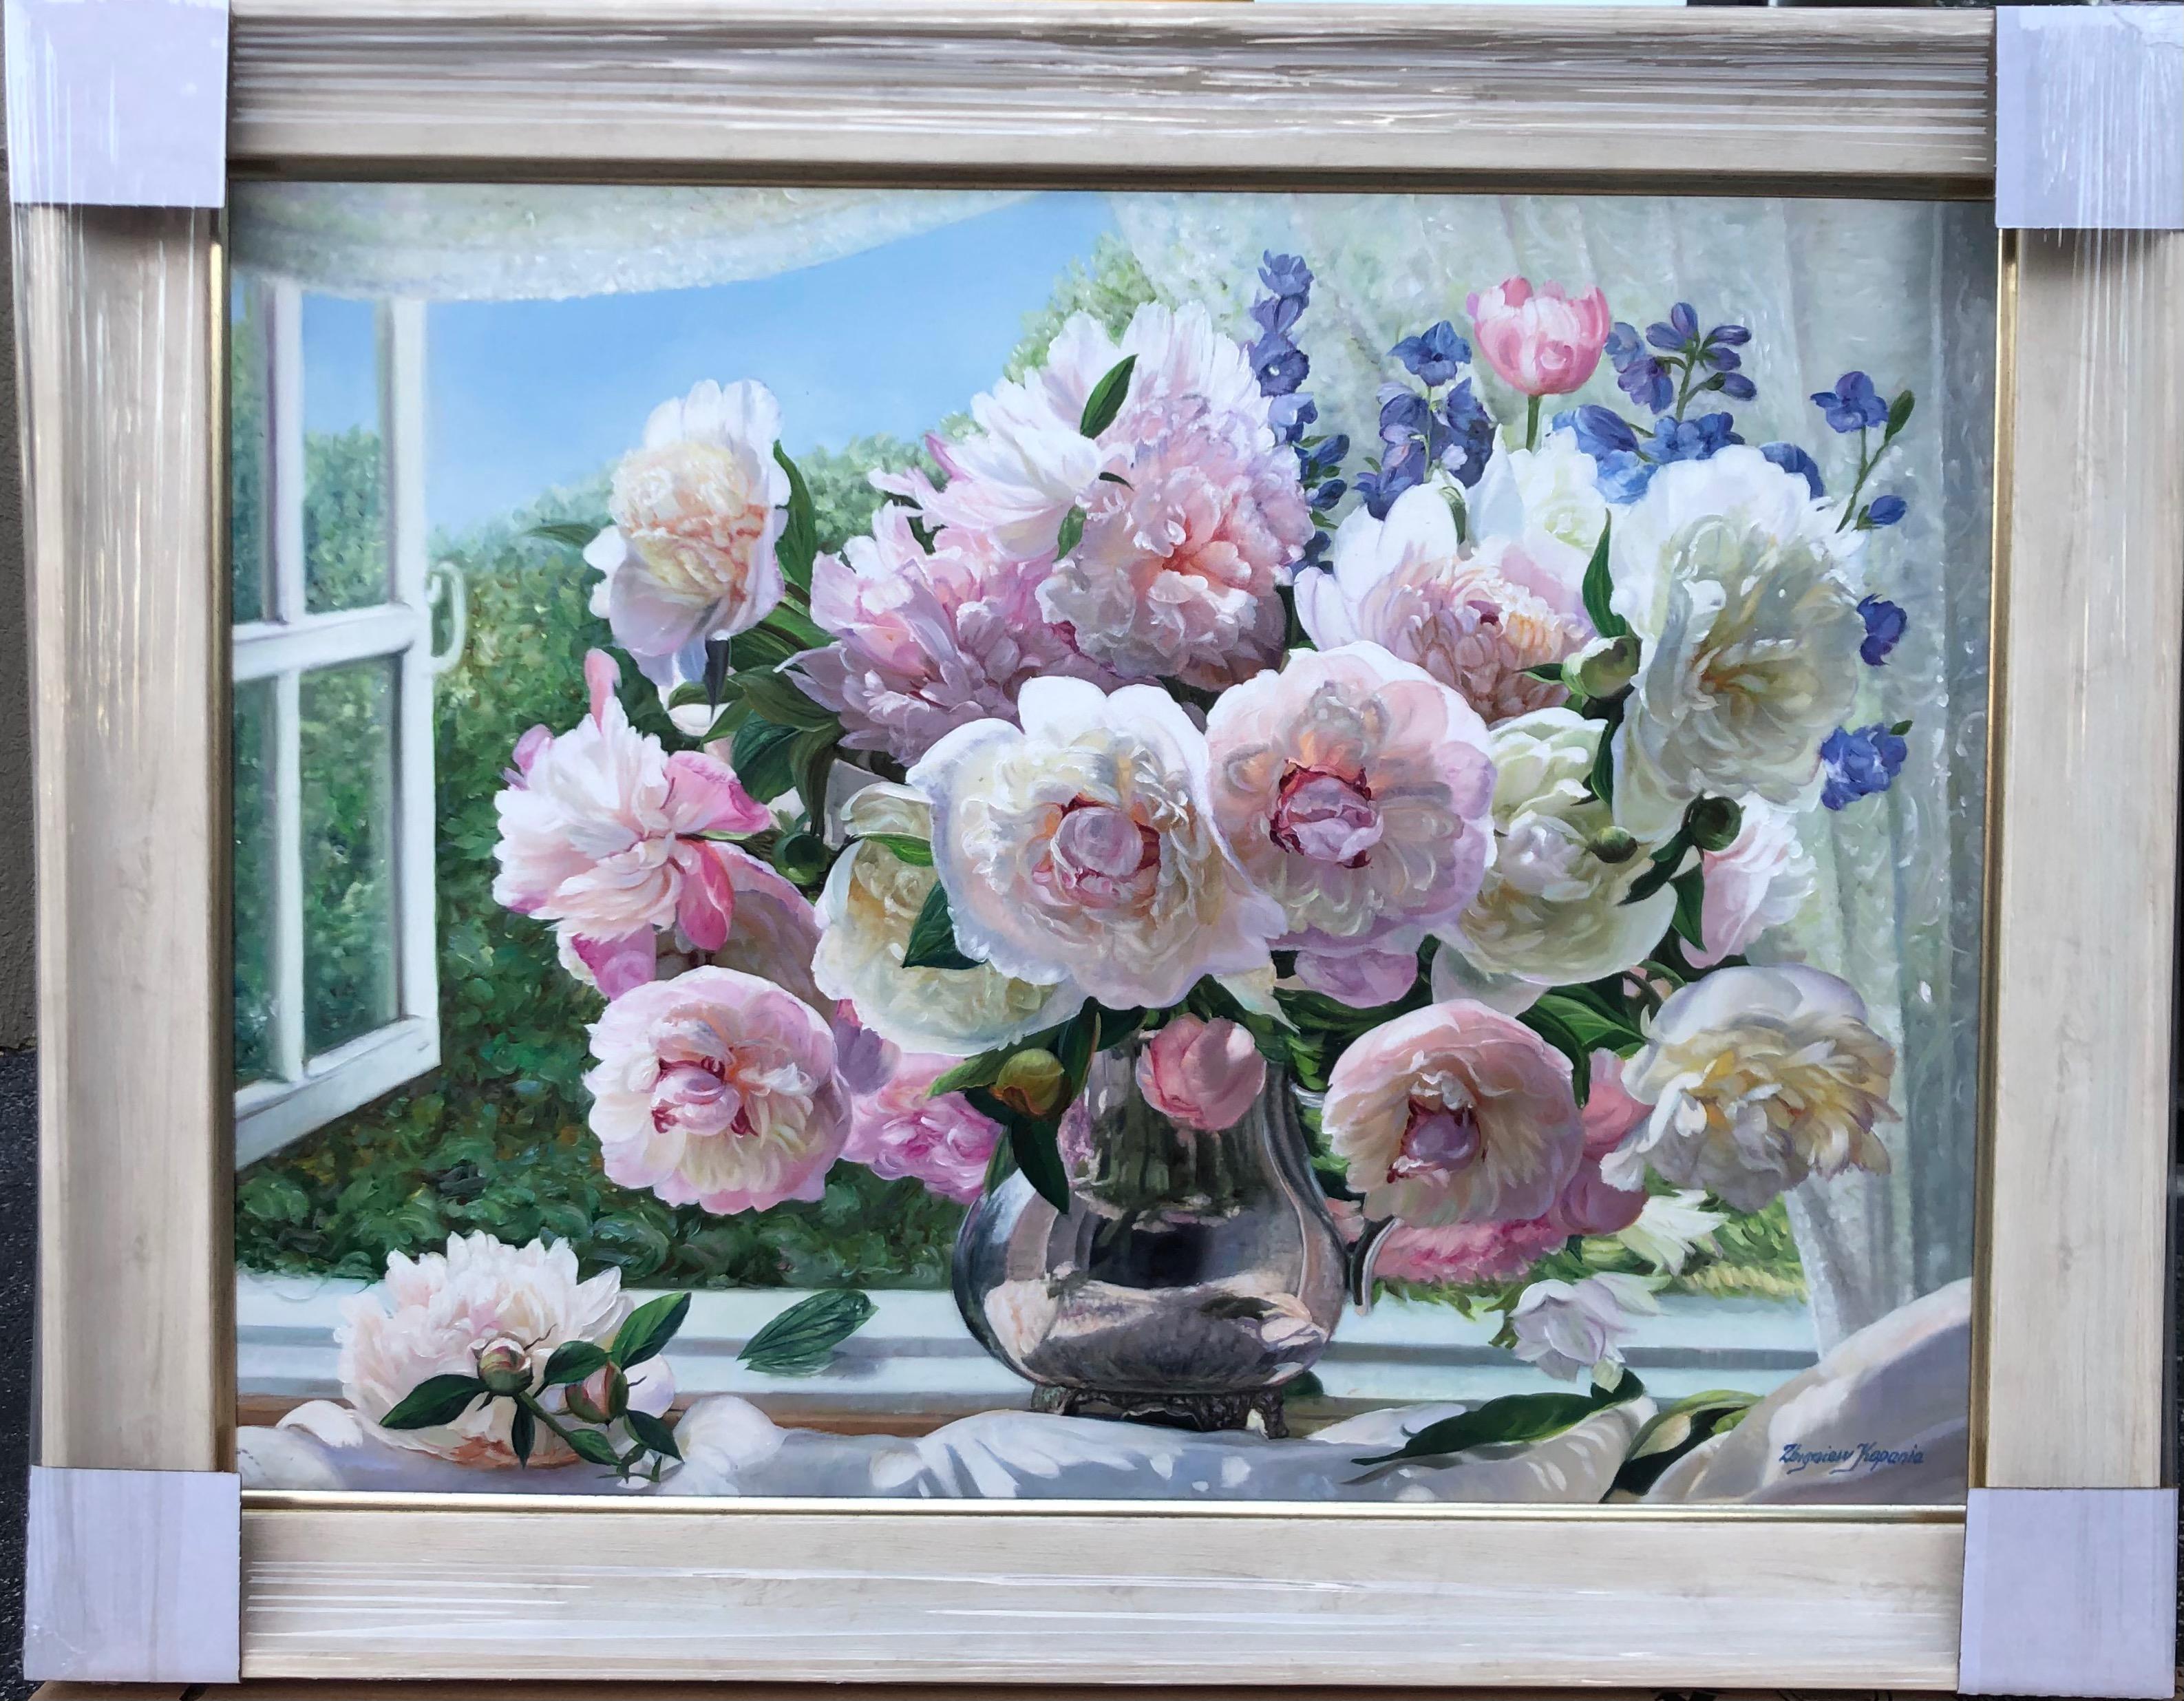 Peonies blanches et roses dans la fenêtre - Gris Figurative Painting par Zbigniew Kopania